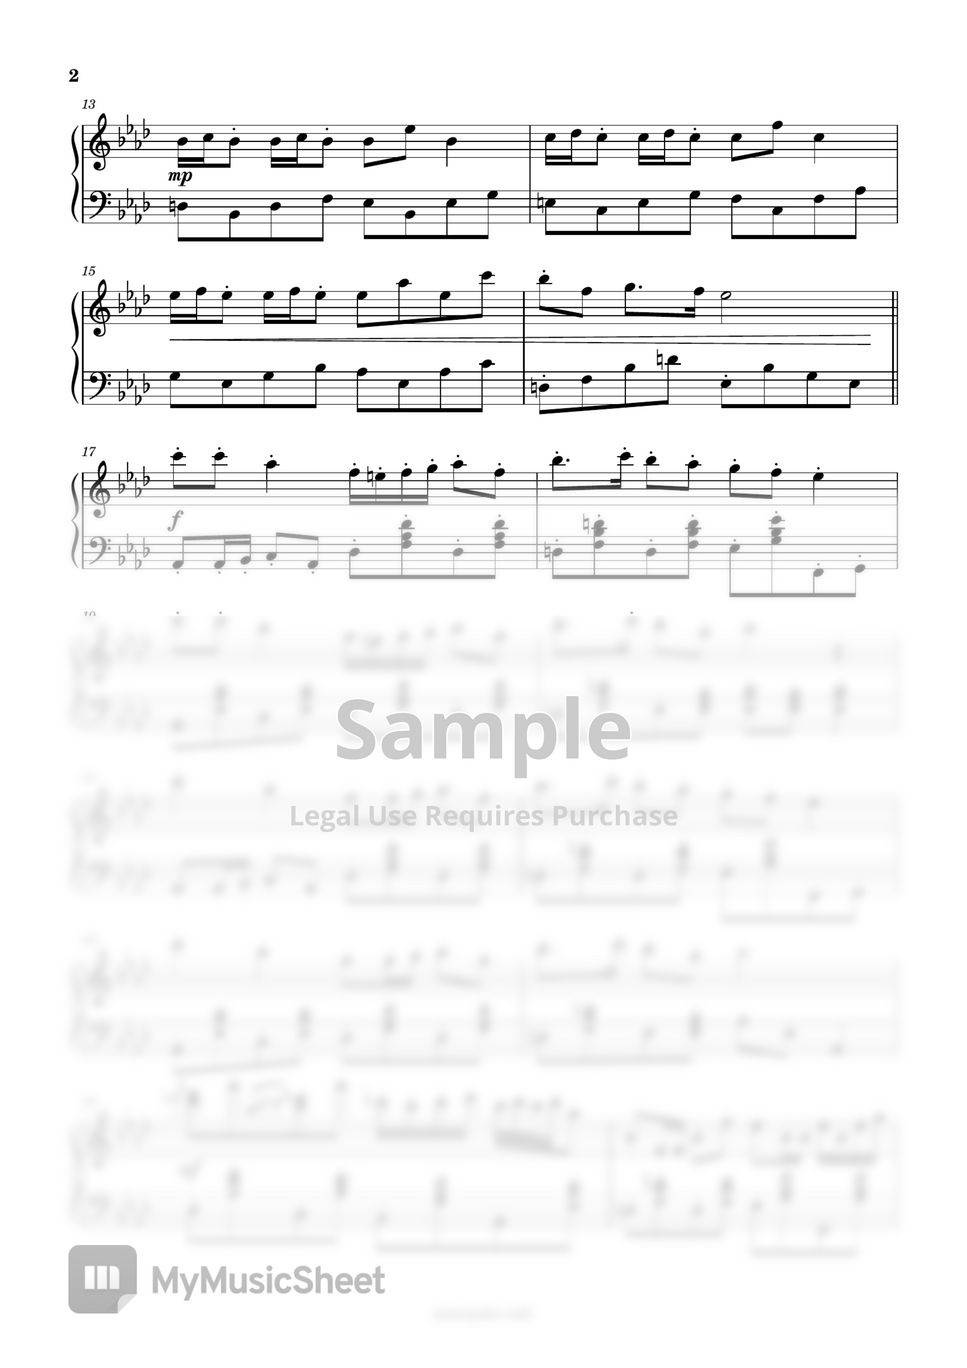 Anpanman - Anpanman March (Anpanman) Sheet by PianoJuku